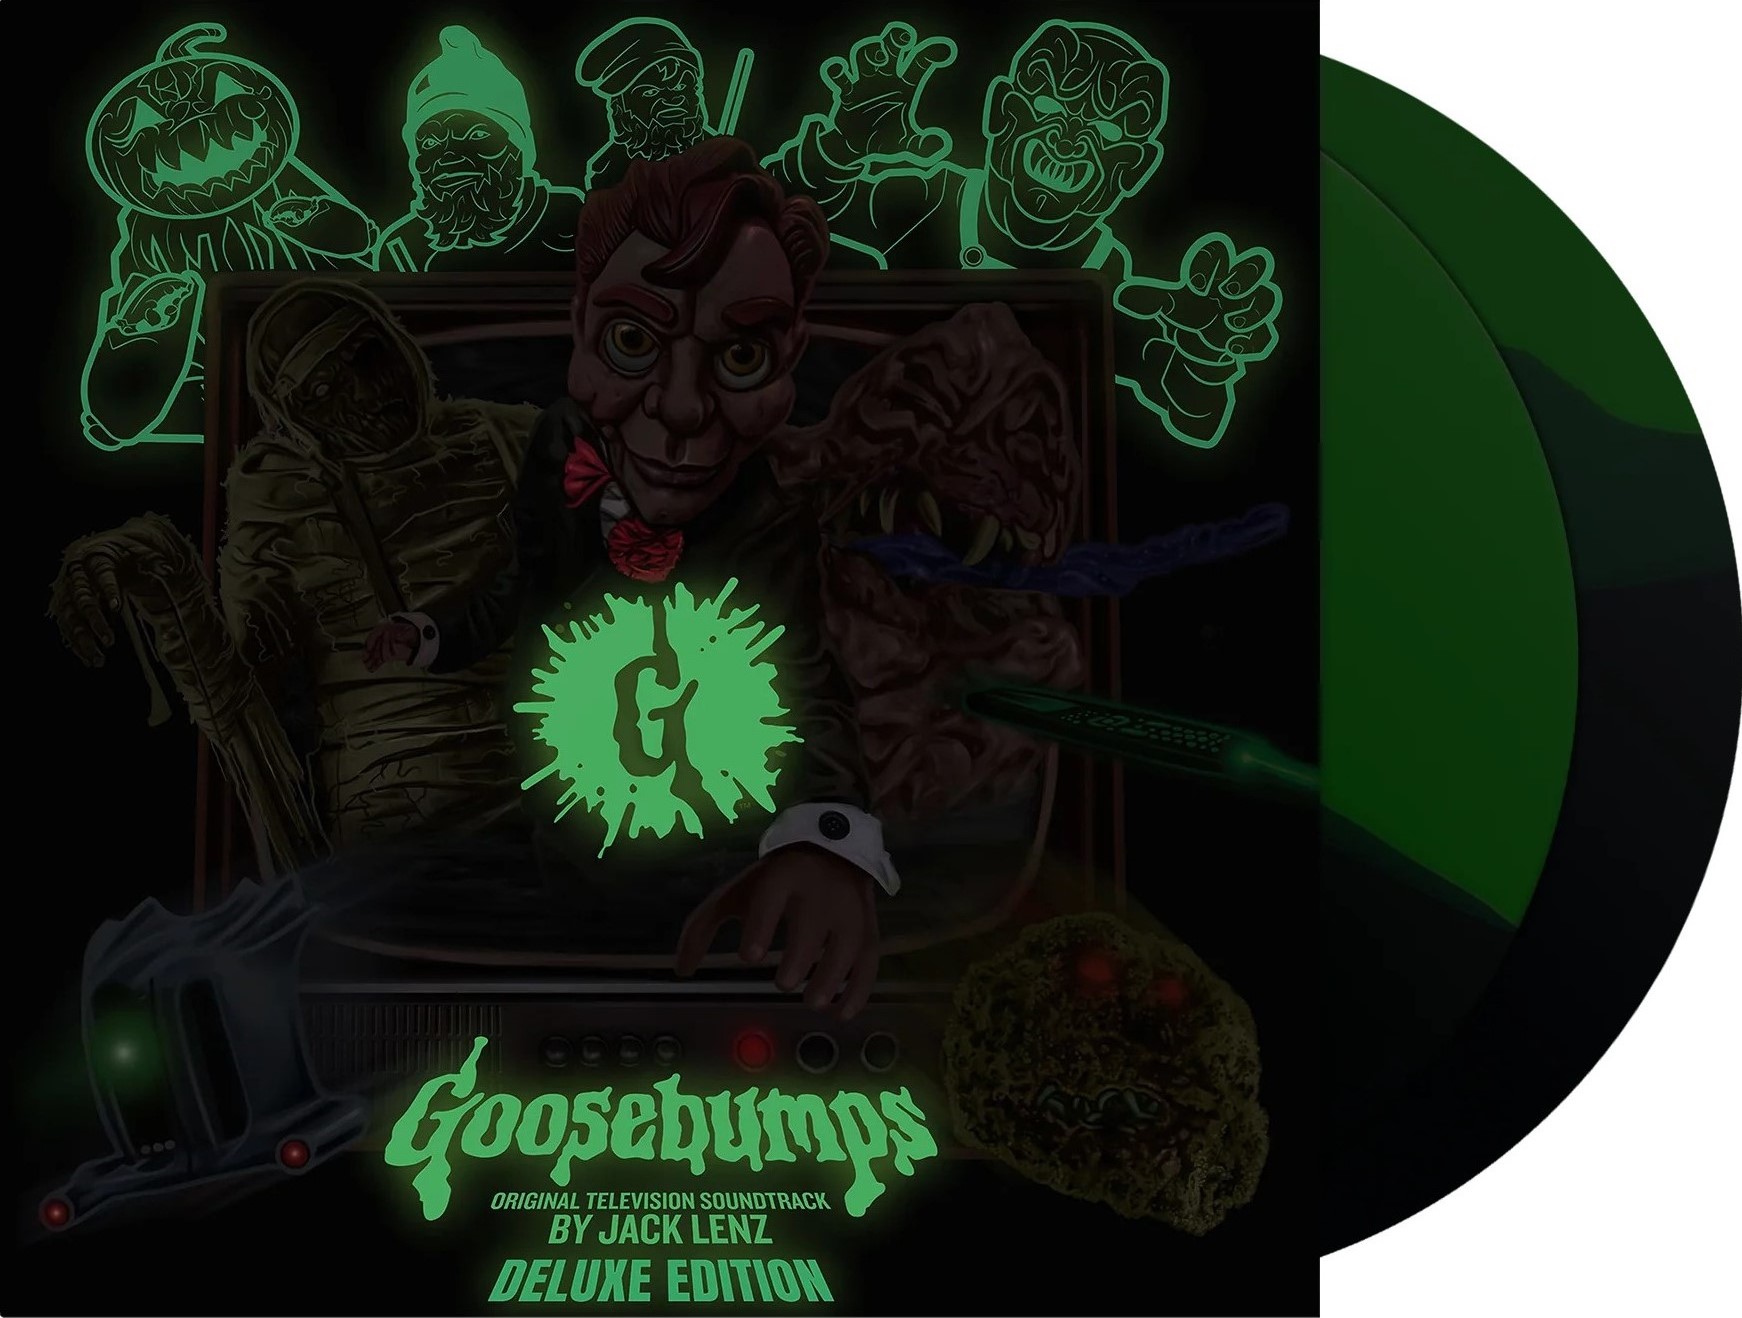 Goosebumps-VinylMock-CoverandDisc-Glow.jpg